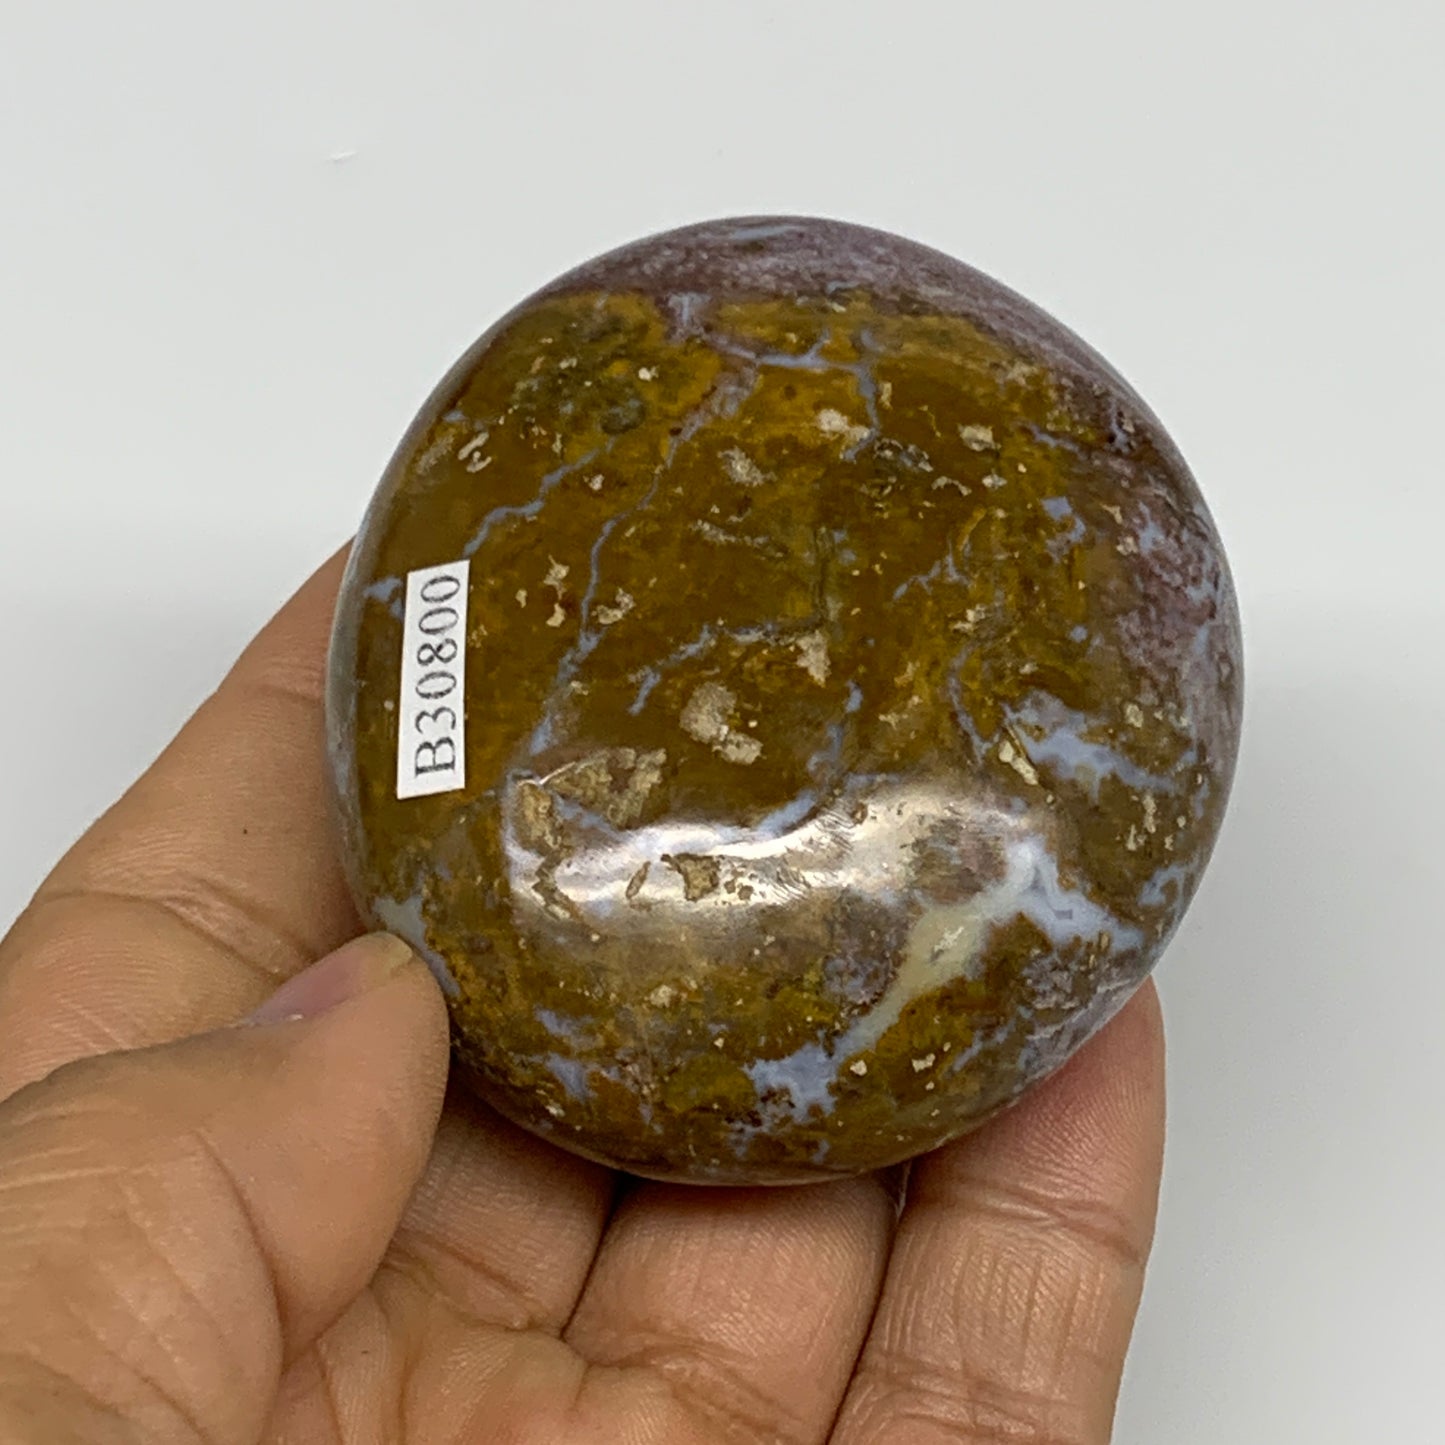 139.3g, 2.4"x2.1"x1.1" Natural Ocean Jasper Palm-Stone Orbicular Jasper, B30800